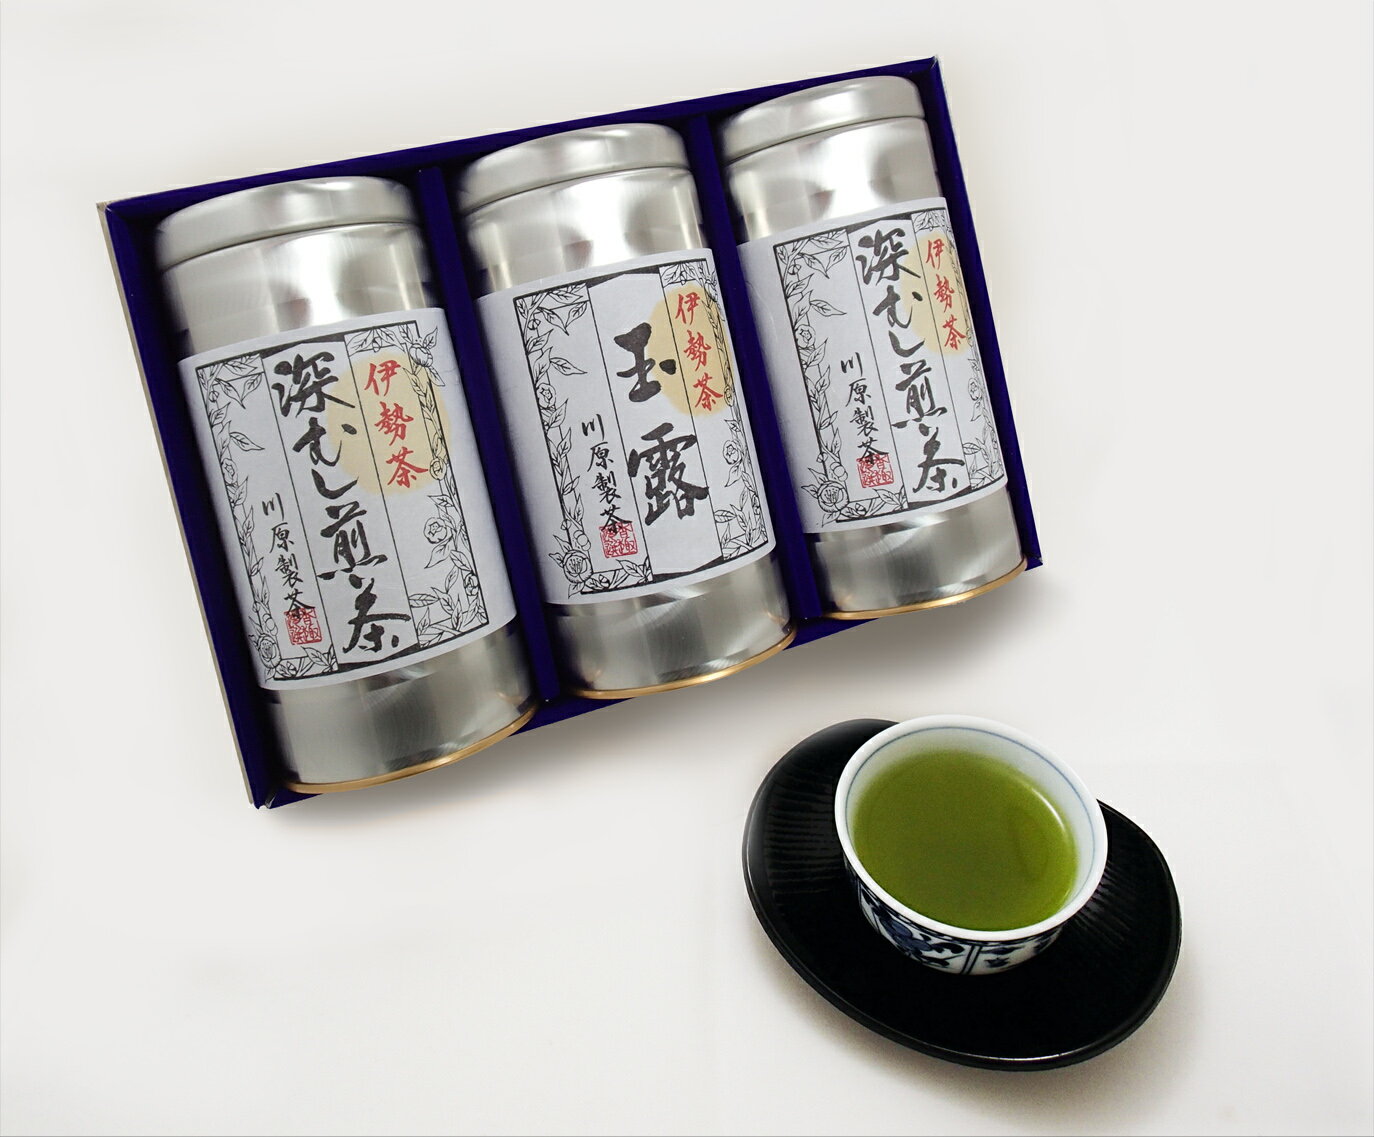 【ふるさと納税】日本三大産地のひとつ 伊勢茶 詰...の商品画像